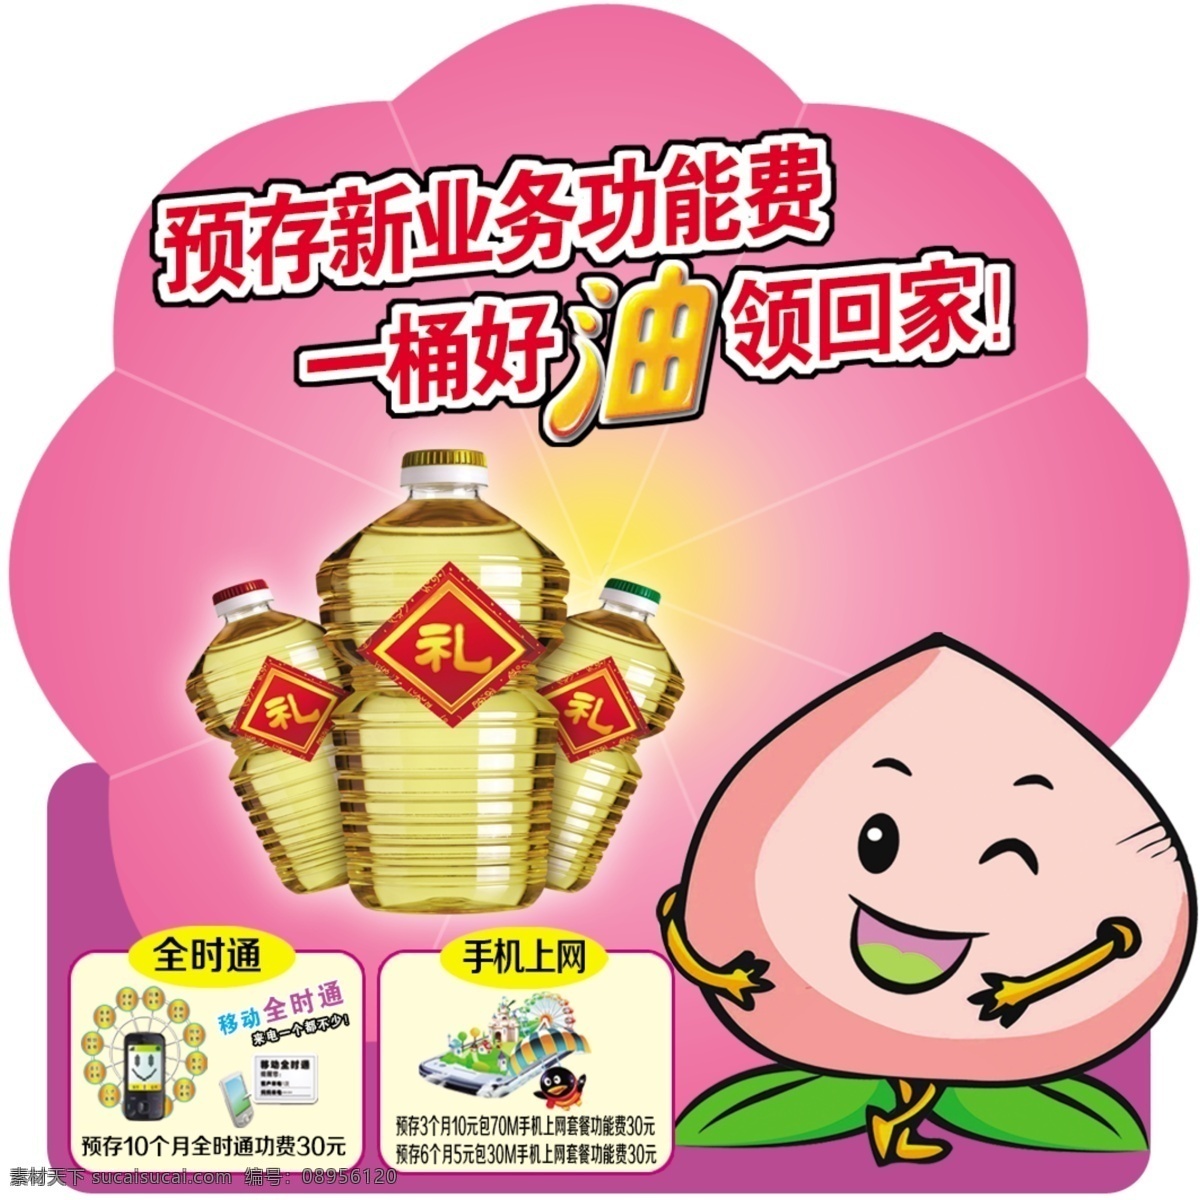 广告设计模板 花形 卡片 名片卡片 异形 源文件 中国移动 模板下载 卡通桃娃 名片卡 广告设计名片